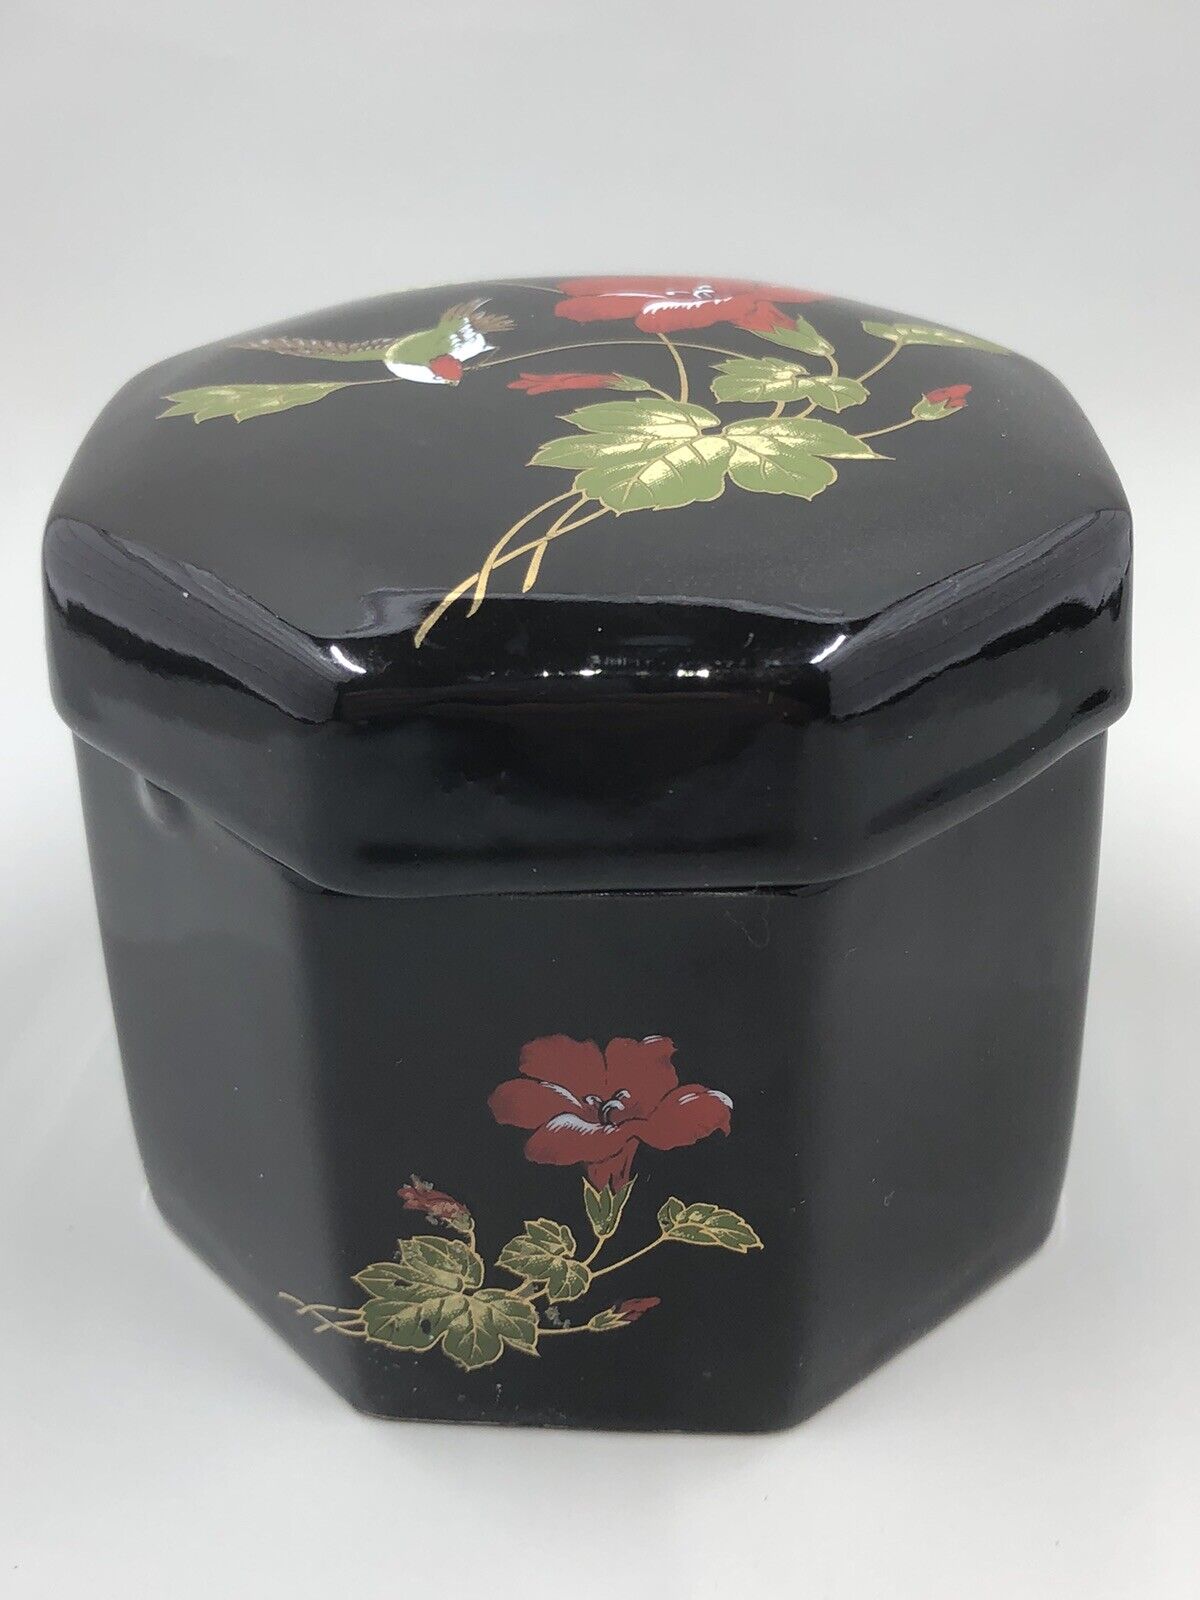 Vintage Porcelain Trinket Box Octagon Black with Lid Floral & Hummingbird Japan